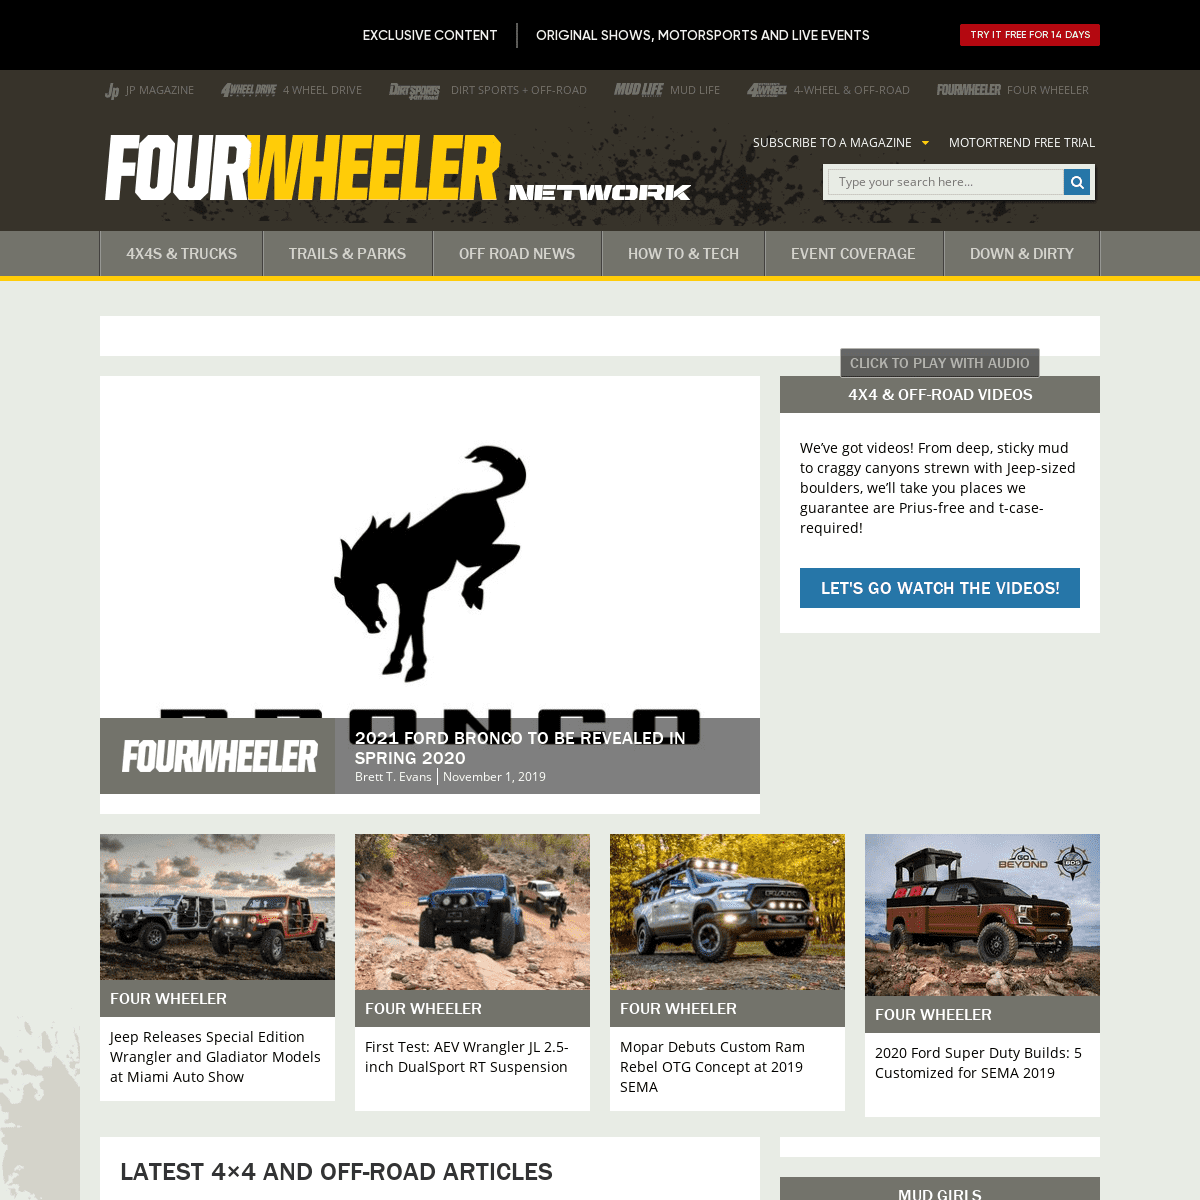 A complete backup of fourwheeler.com